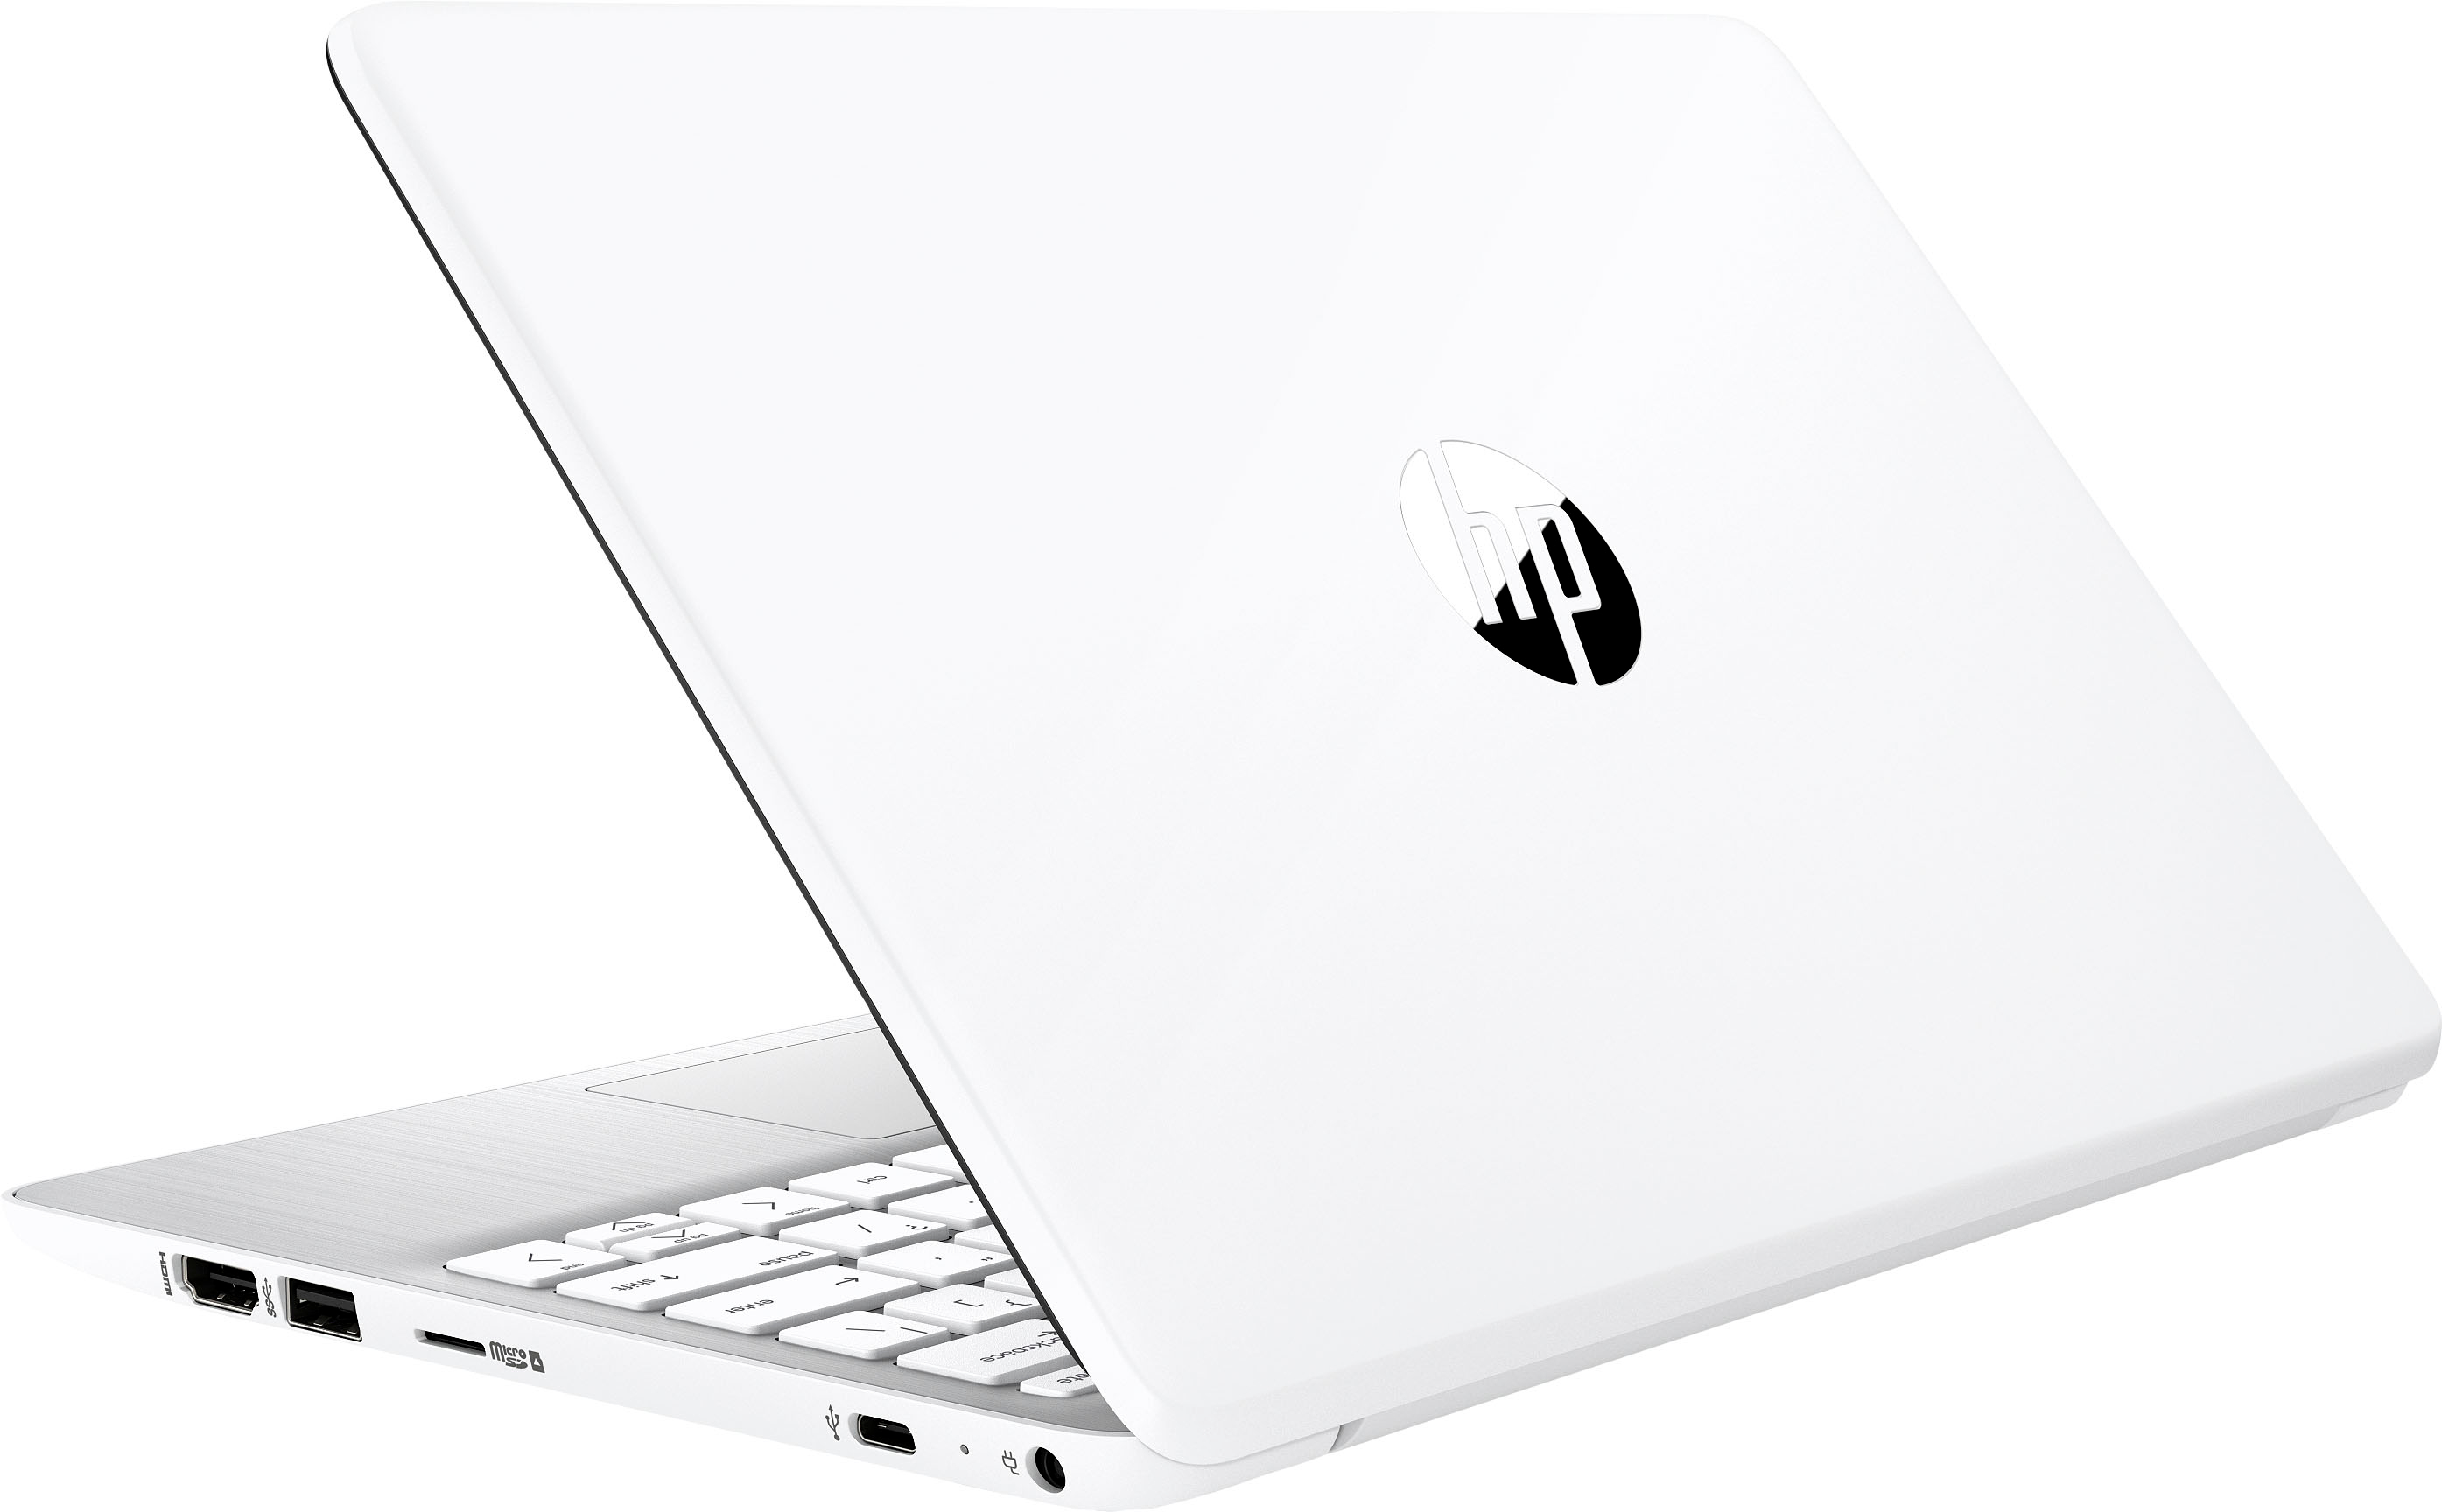 HP - Stream 11.6" Laptop - Intel Celeron - 4GB Memory - 64GB eMMC - Diamond White